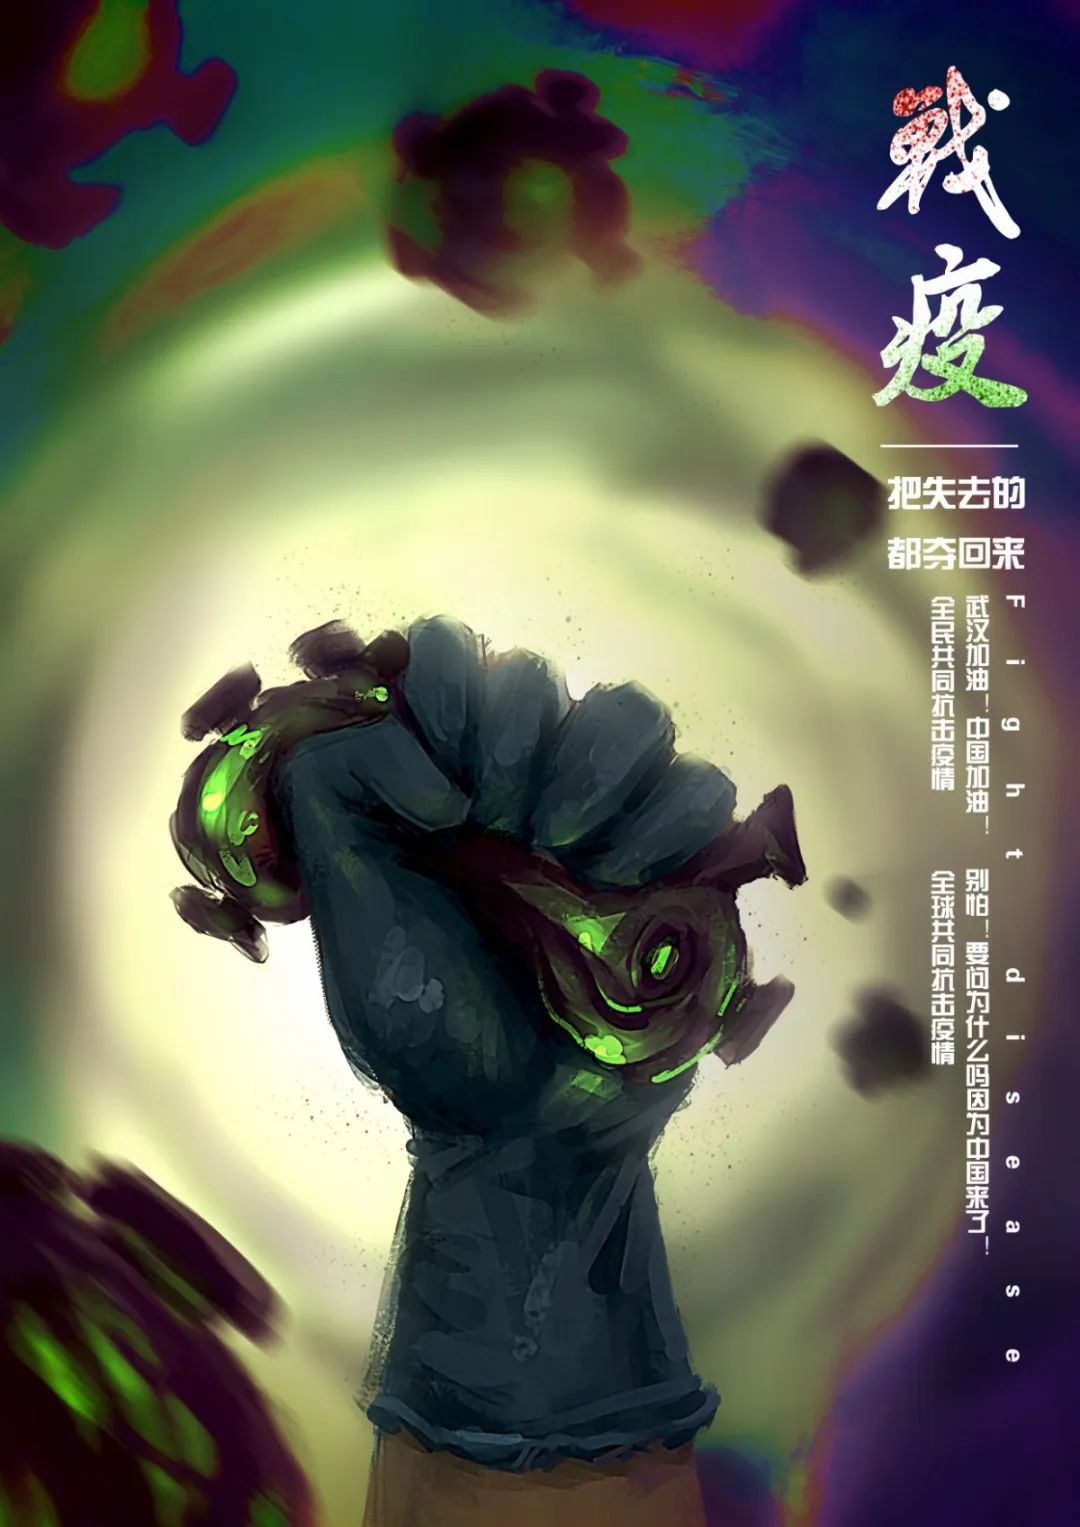 广东职业技术学院艺术设计系s广告192班抗疫公益海报设计作品